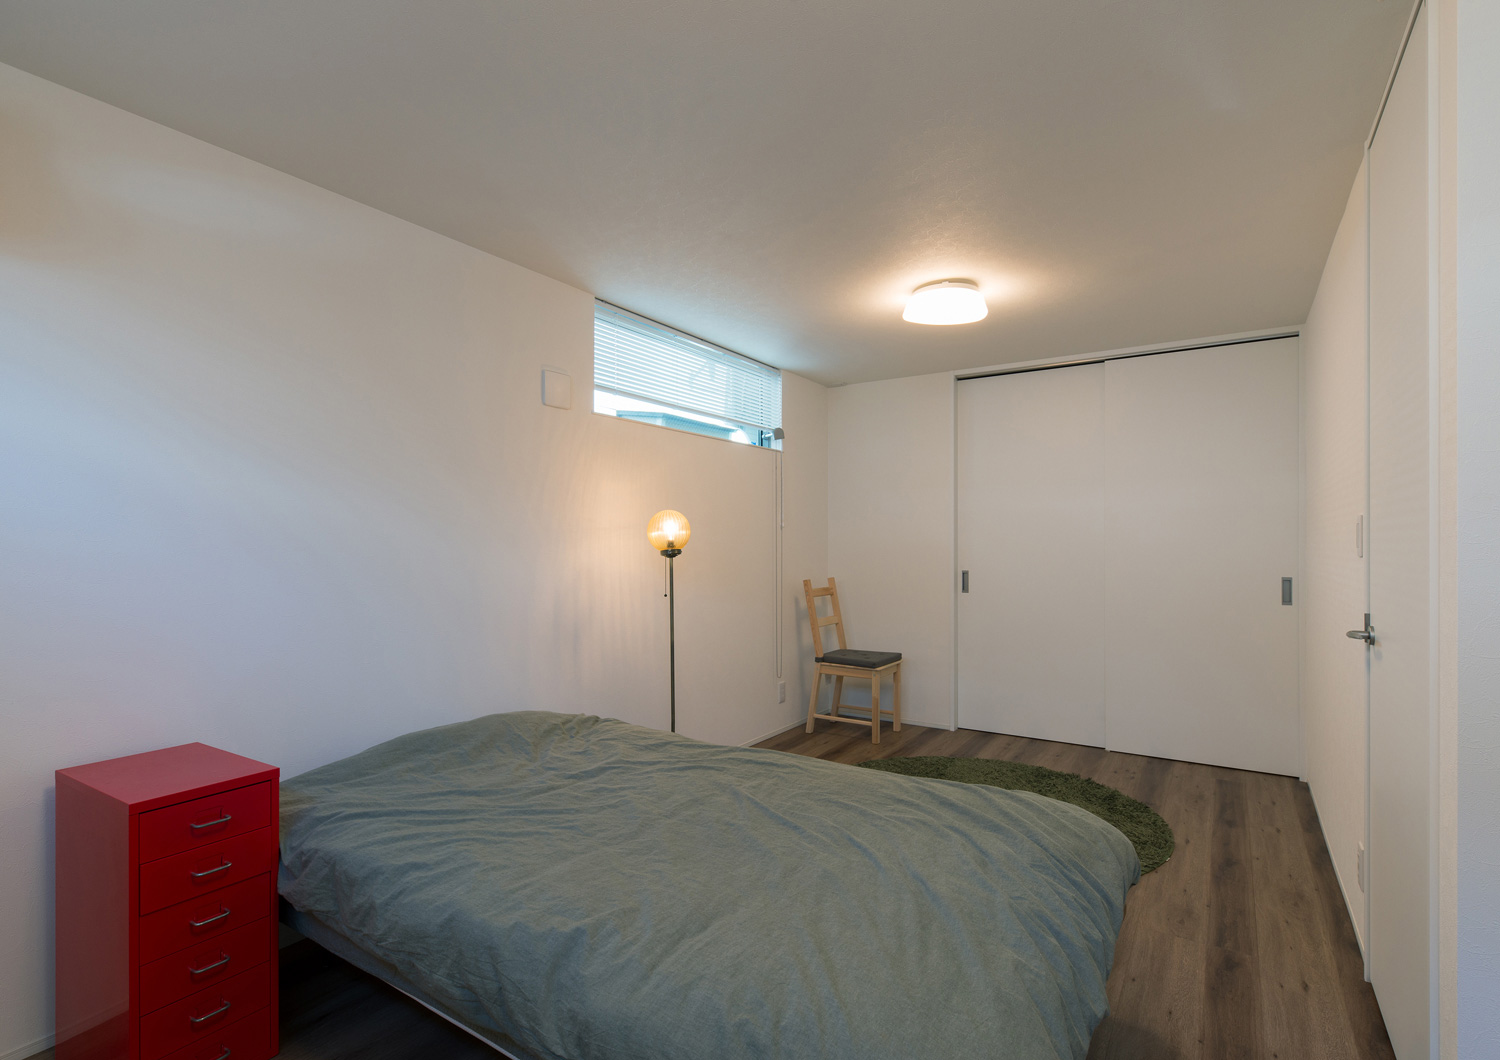 間接照明を取り付けたシンプルな寝室・デザイン住宅